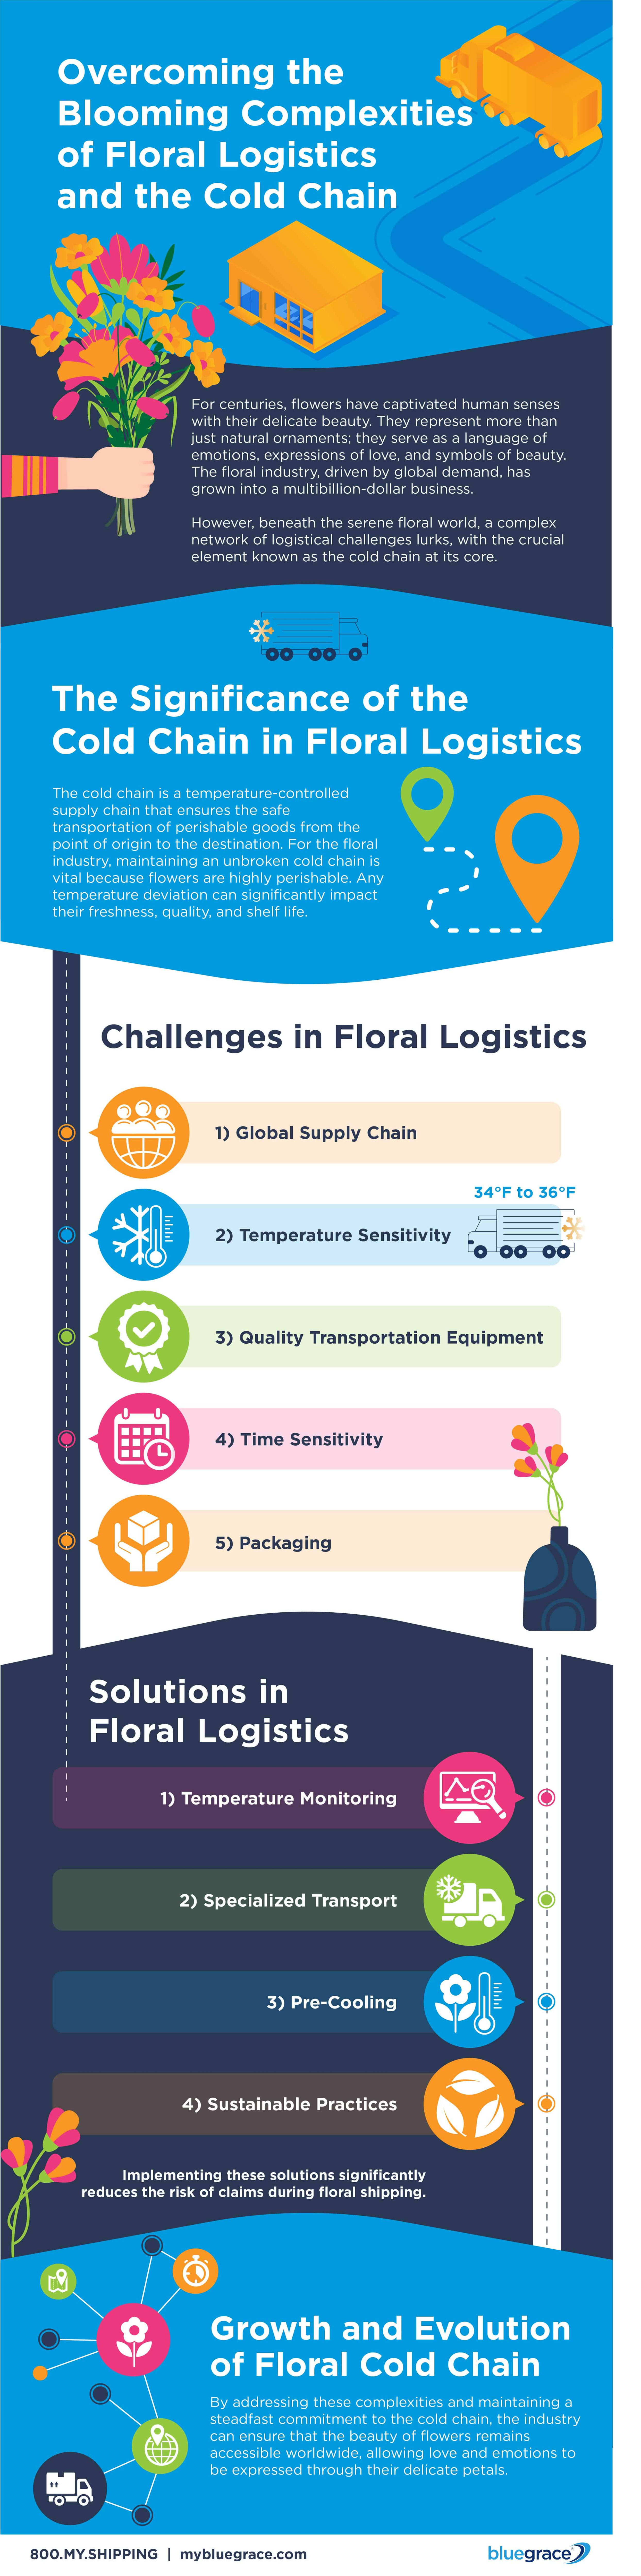 Floral Logistics